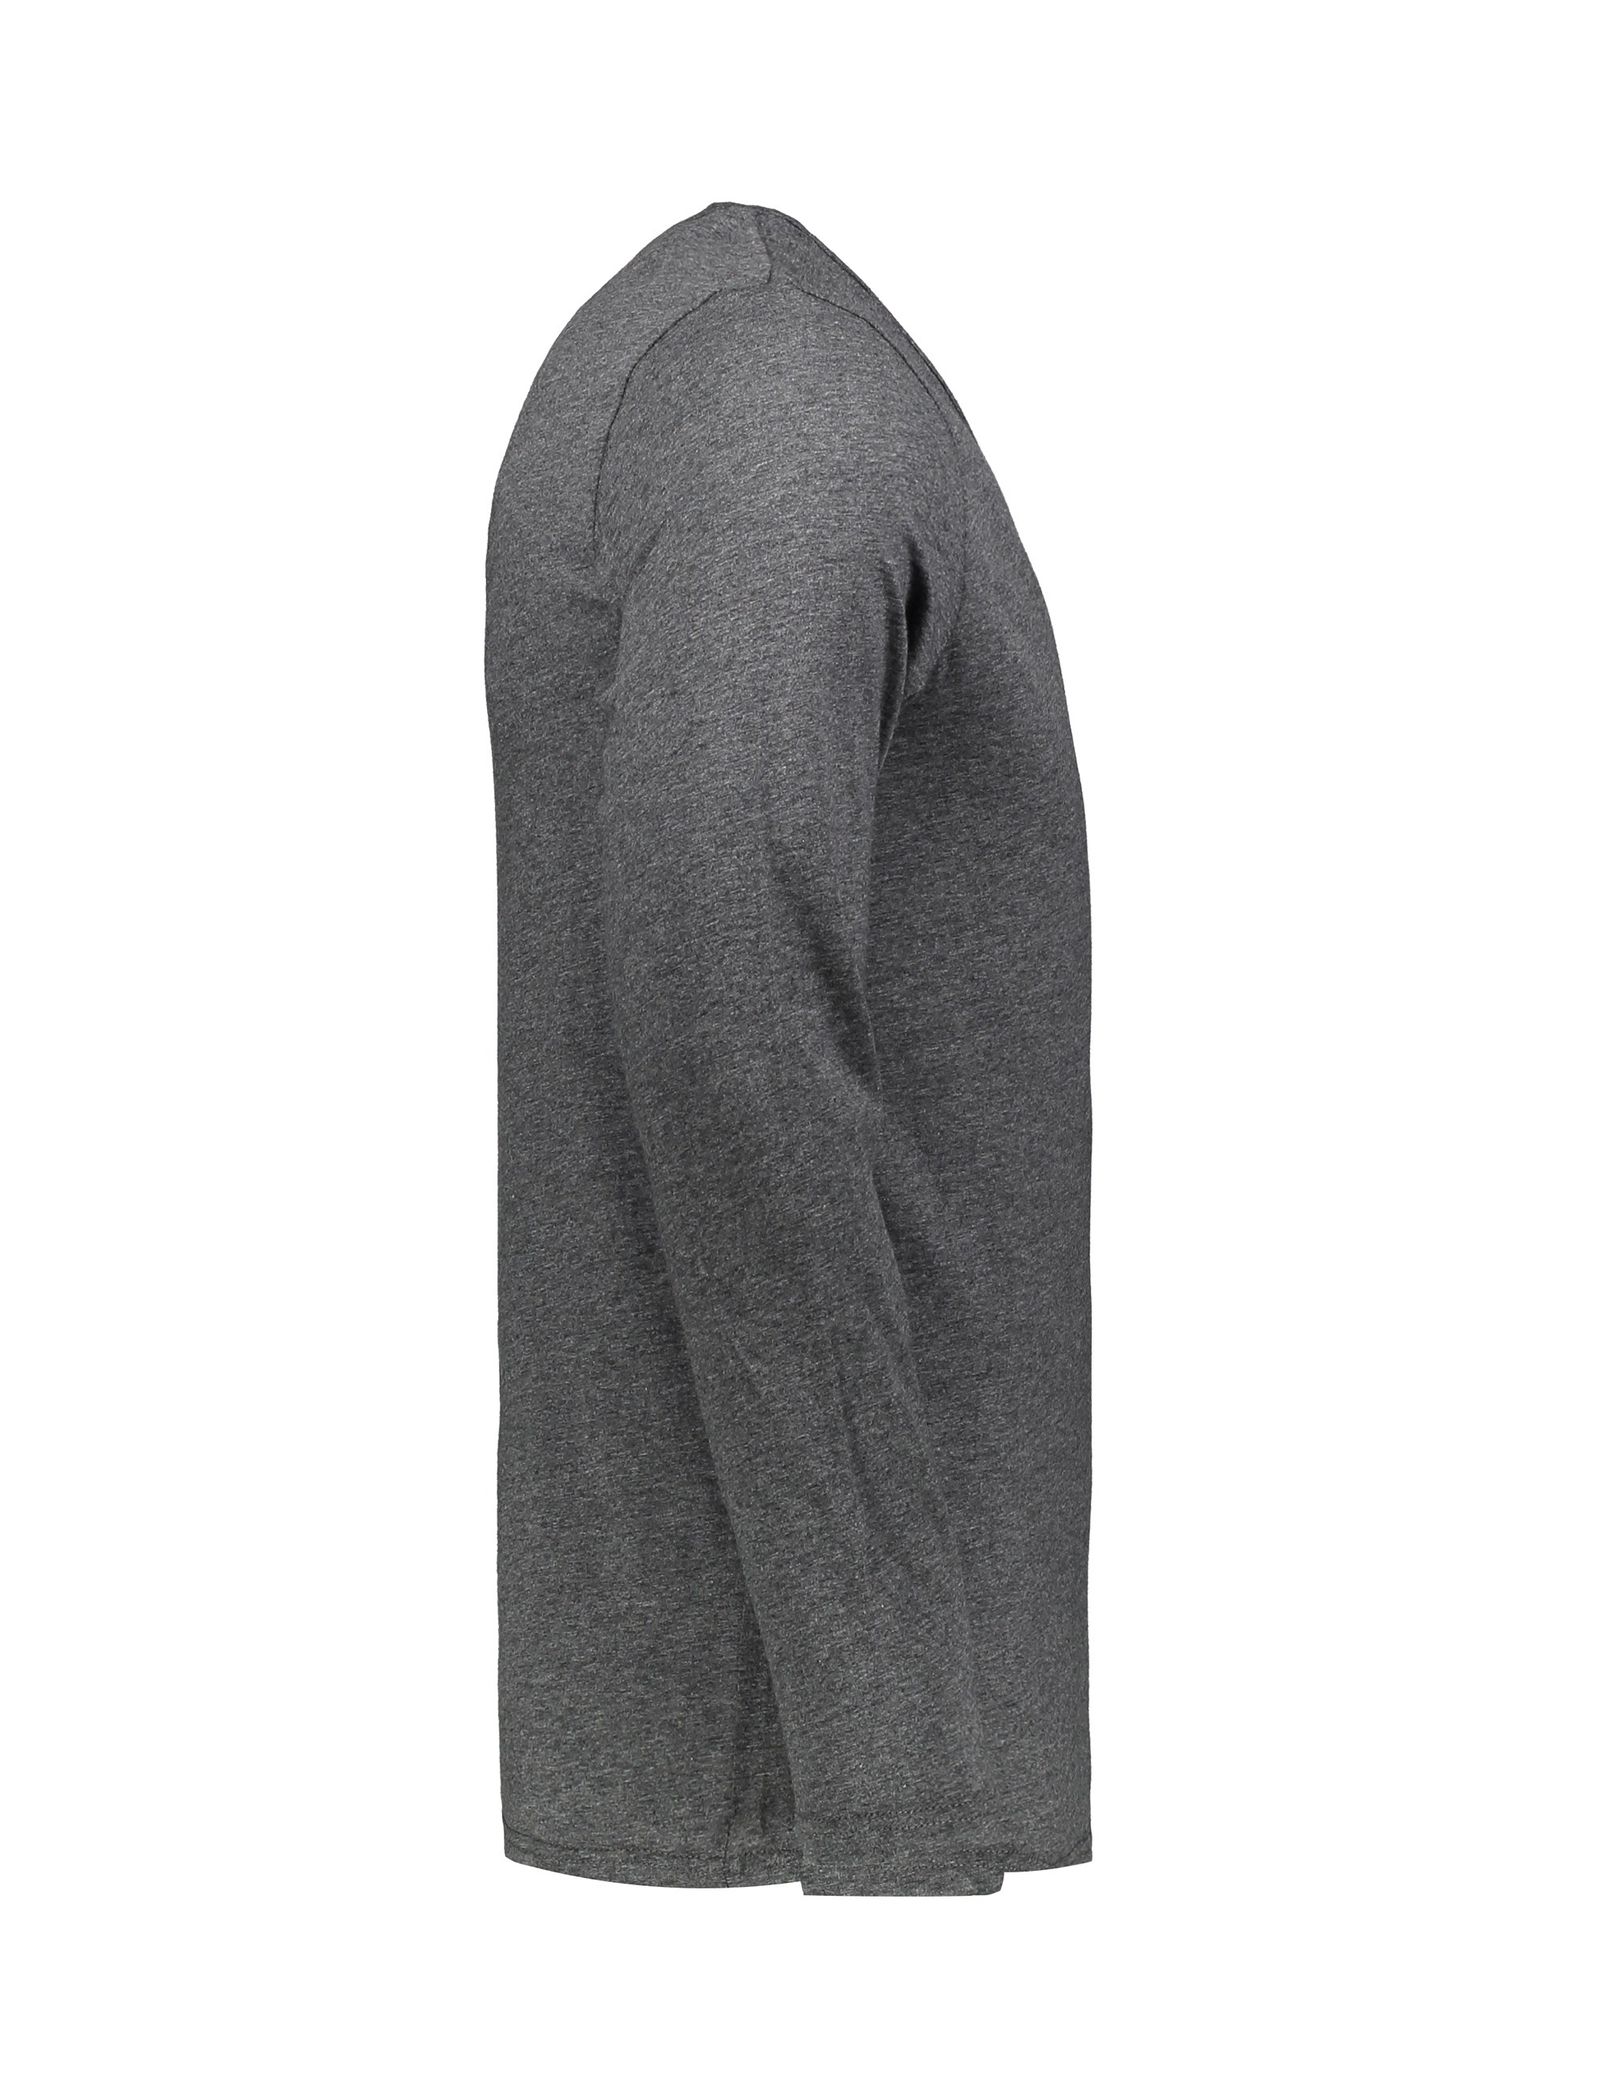 تی شرت و شلوار راحتی مردانه - سلیو - زغالي - 5